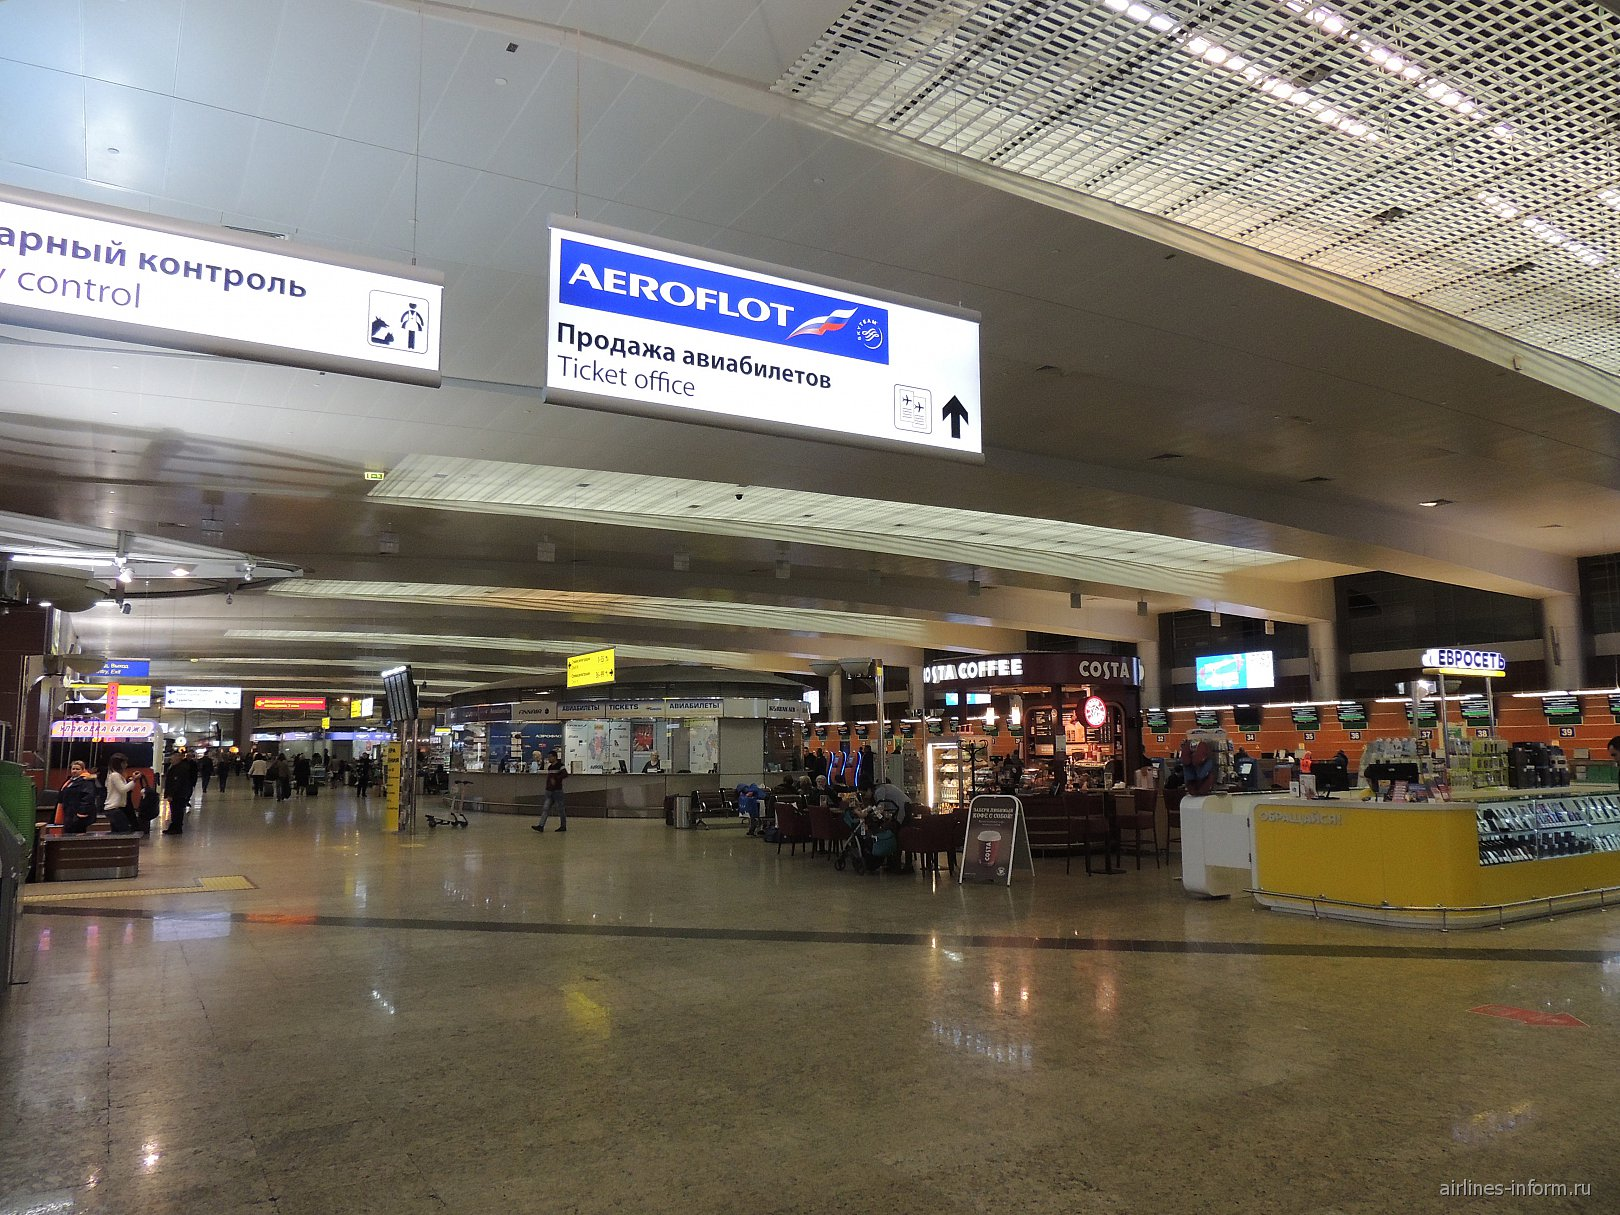 Шереметьево терминал е. Москва аэропорт Шереметьево внутри. Шереметьево терминал д внутри. Шереметьево изнутри терминал д. Аэропорт Шереметьево терминал в внутри.